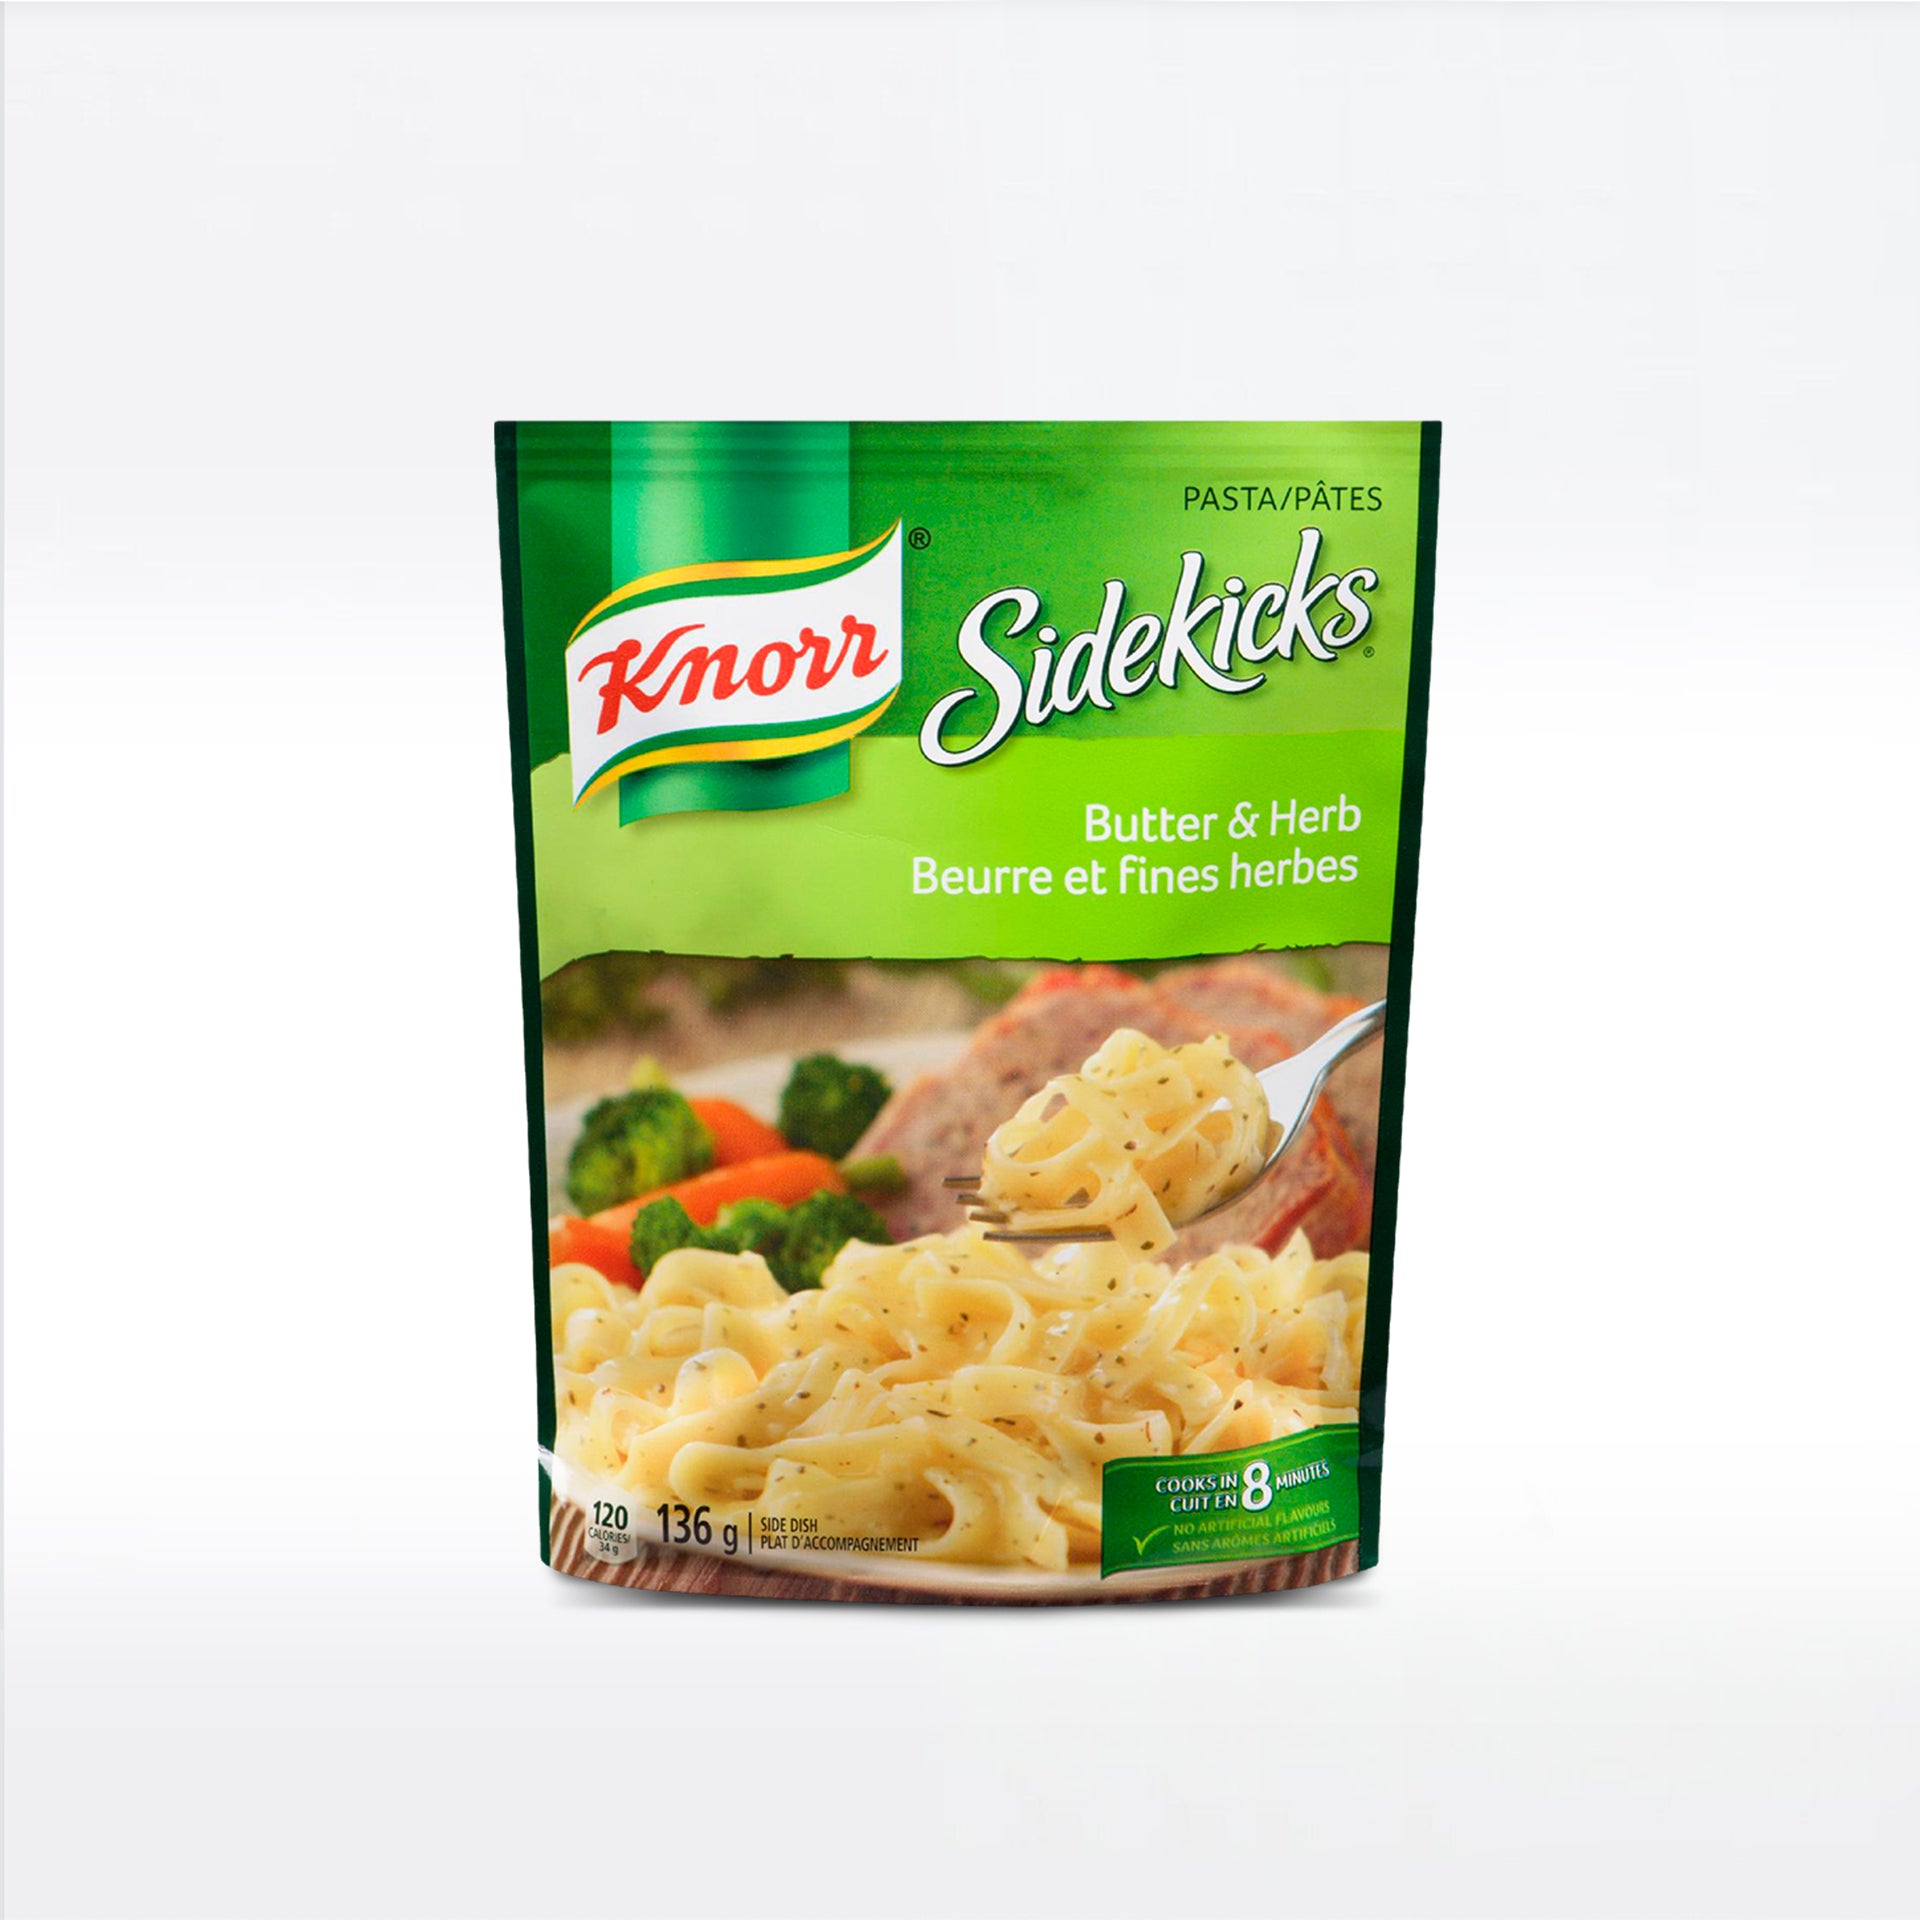 Knorr Sidekicks Butter & Herb 136g